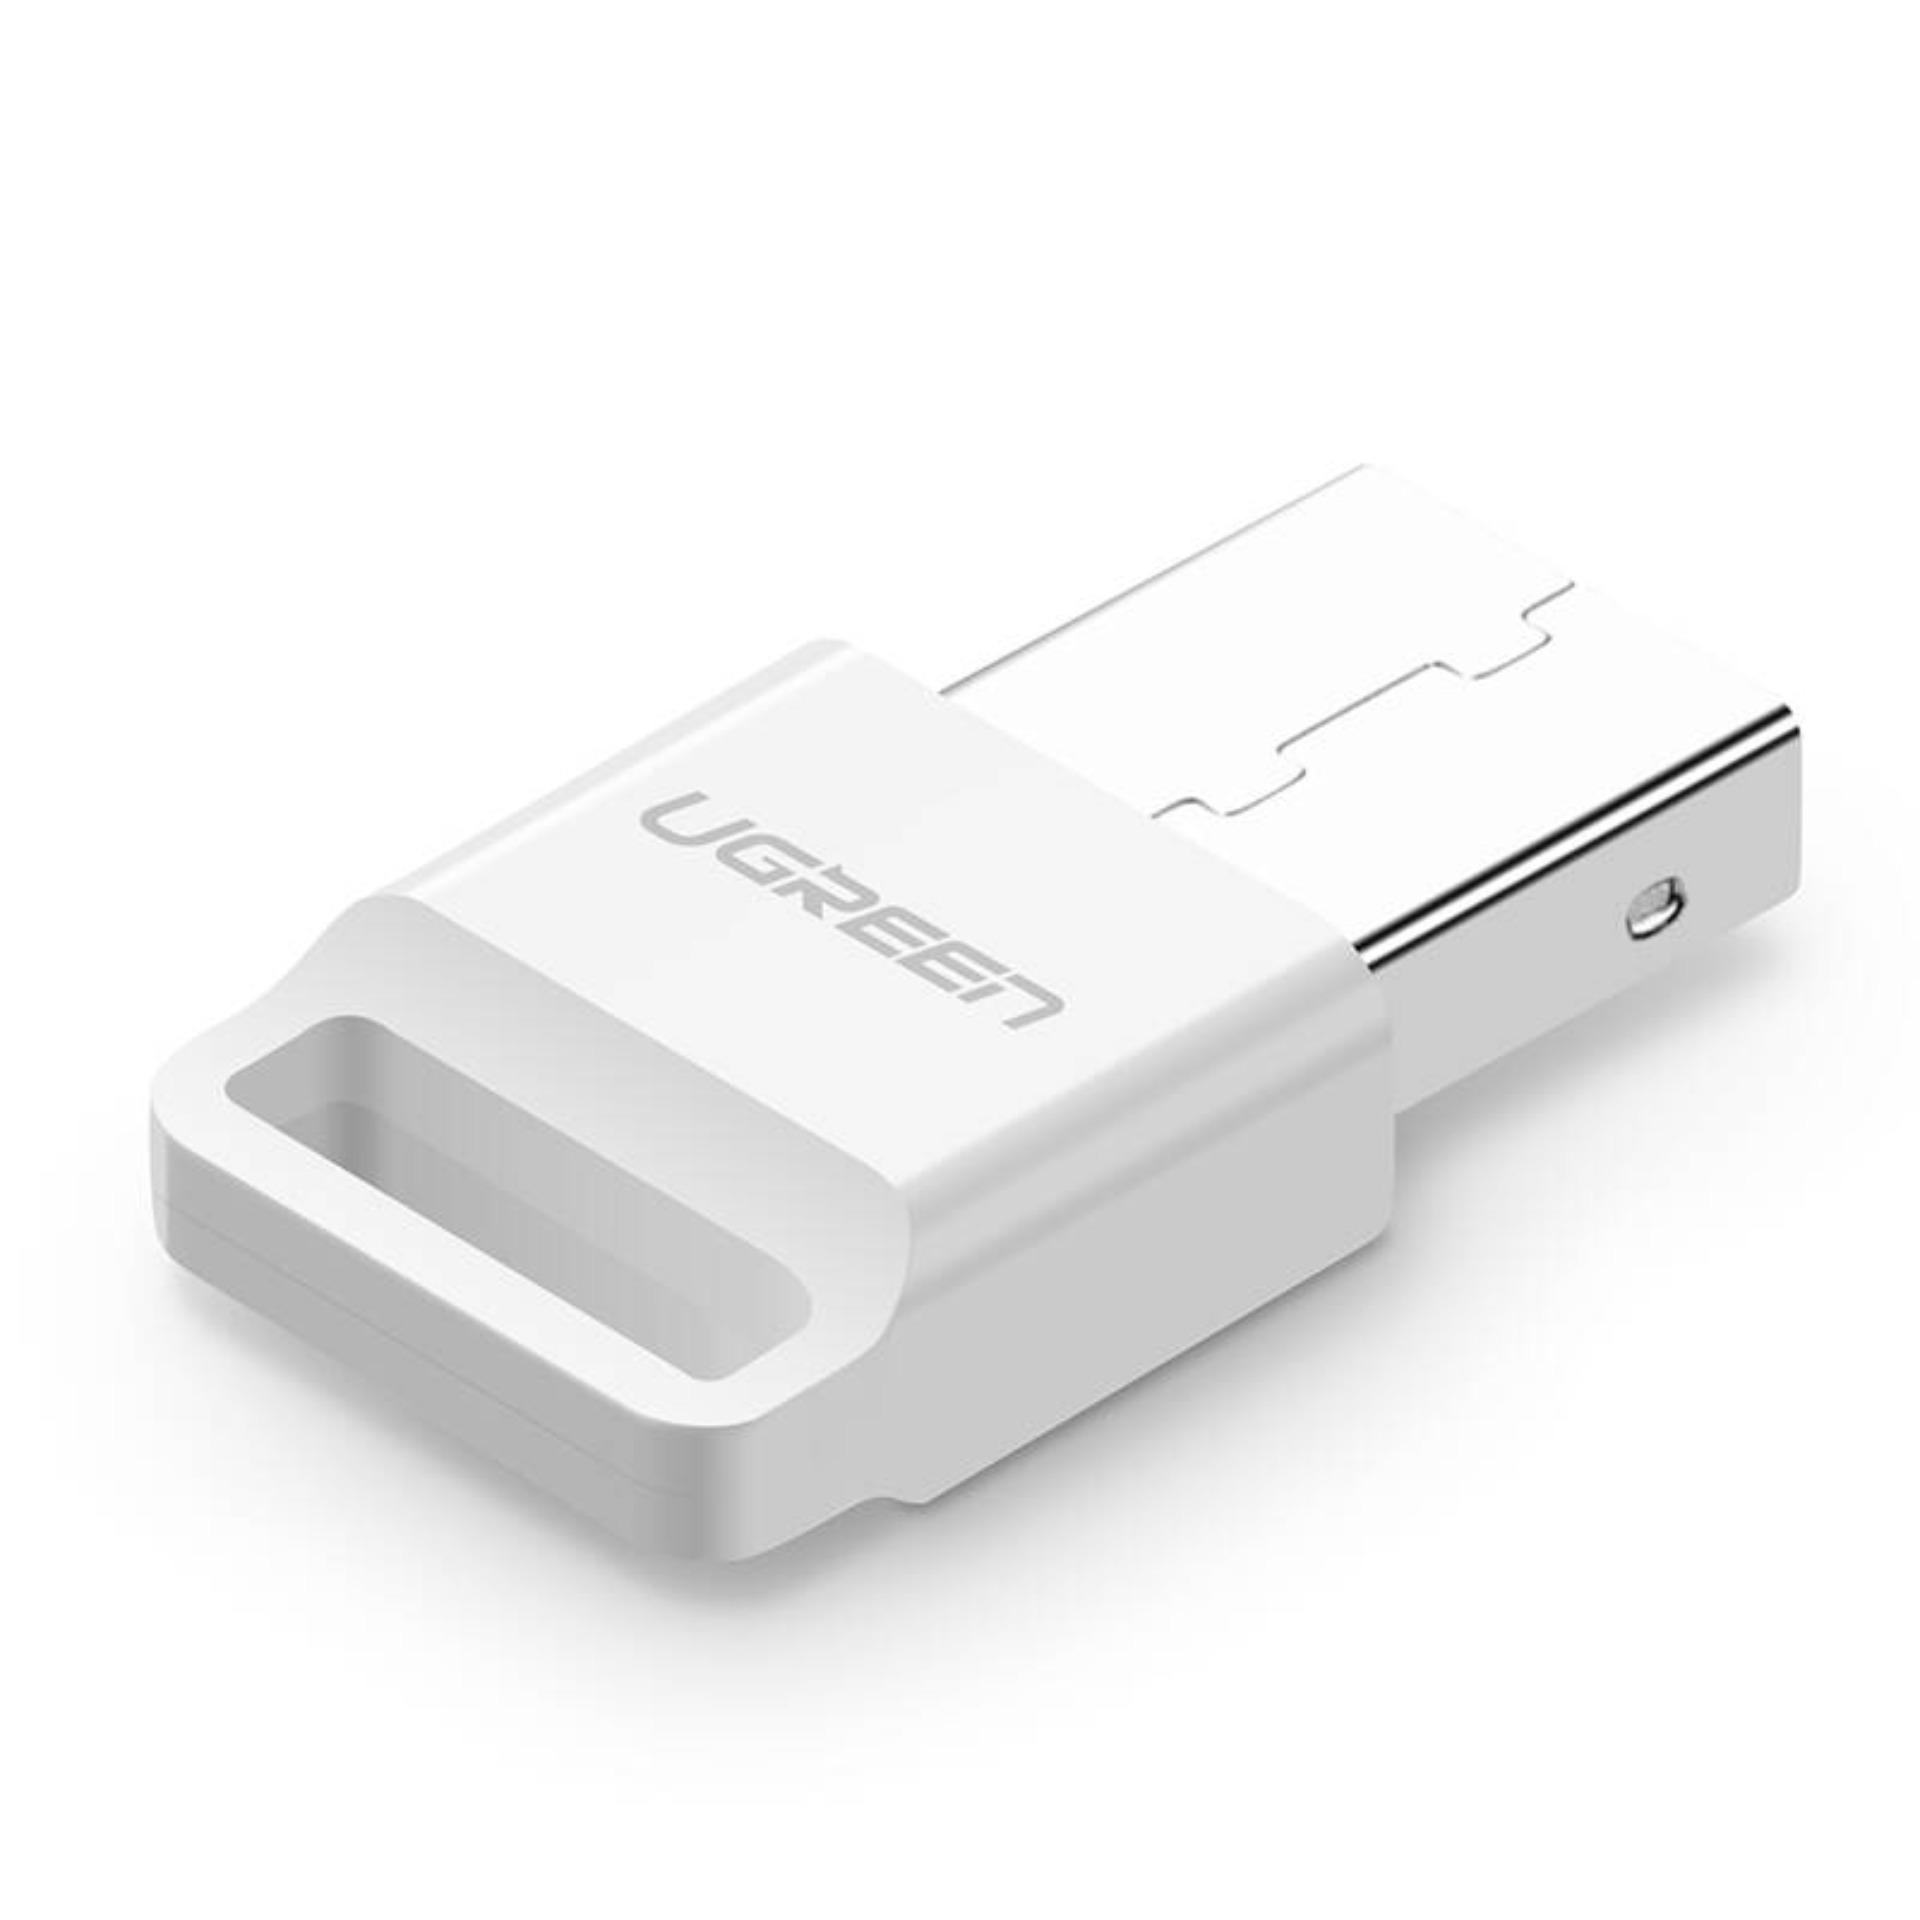 Thiết bị USB thu Bluetooth 4.0 UGREEN US192 30443 - Hãng phân phối chính thức